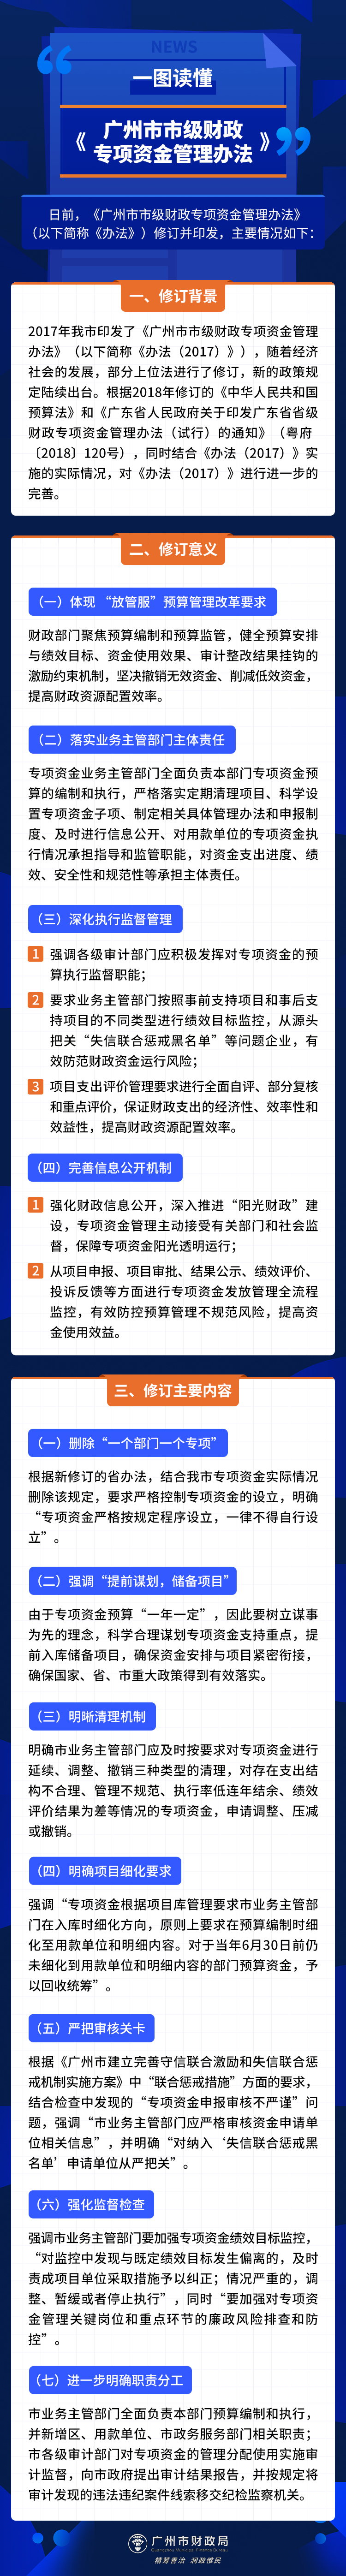 《广州市市级财政专项资金管理办法》图文解读.jpg